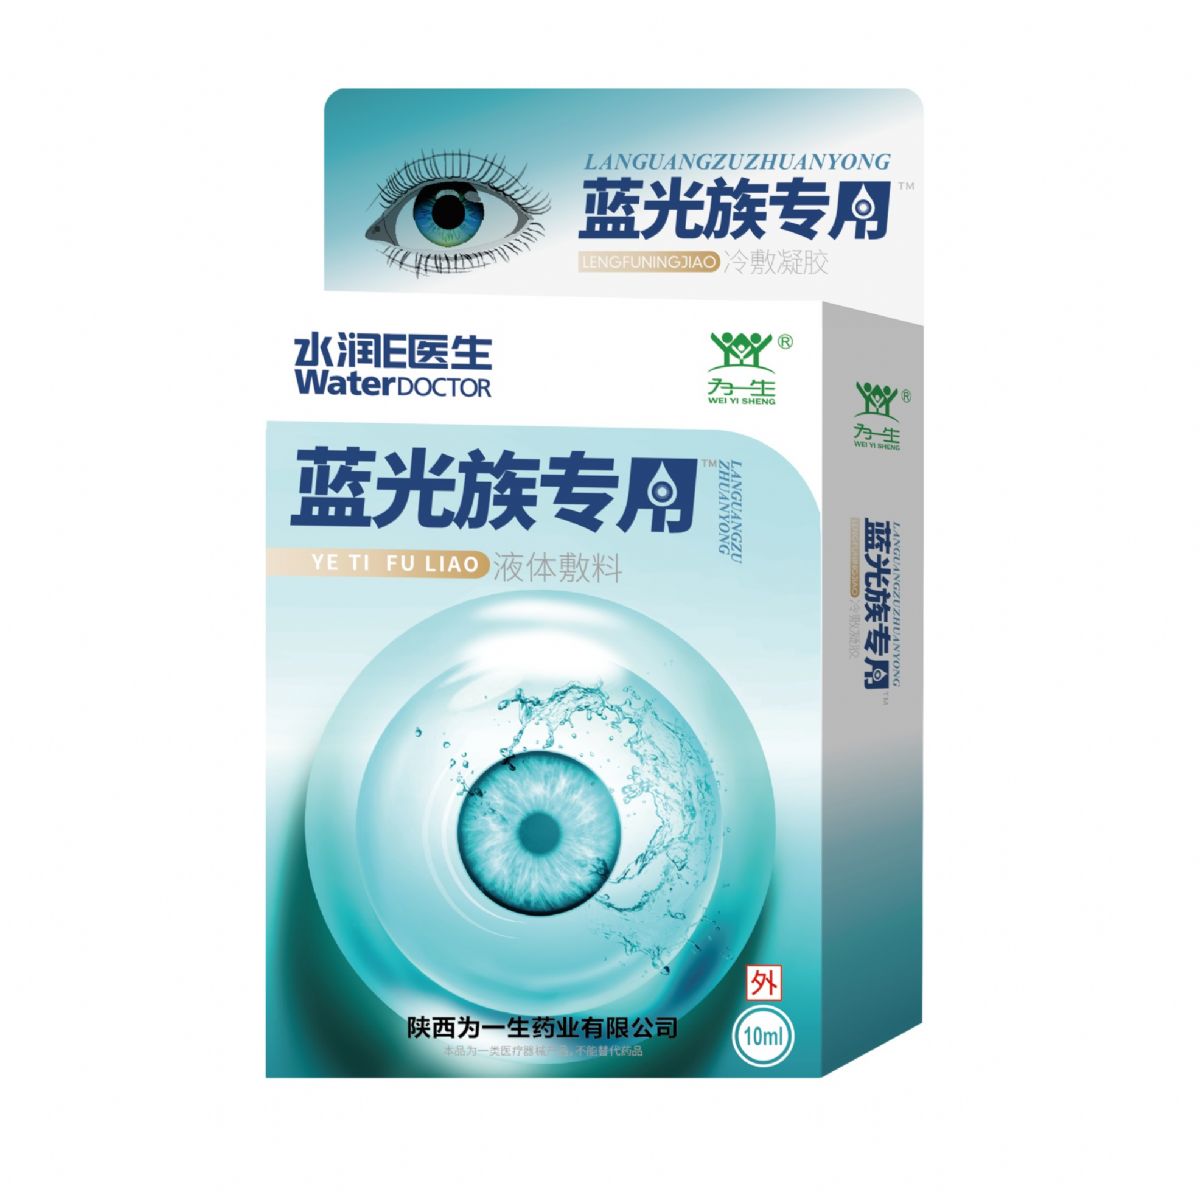 藍光族專用（長時操作電子產品用）眼藥水廠家直銷  可貼牌